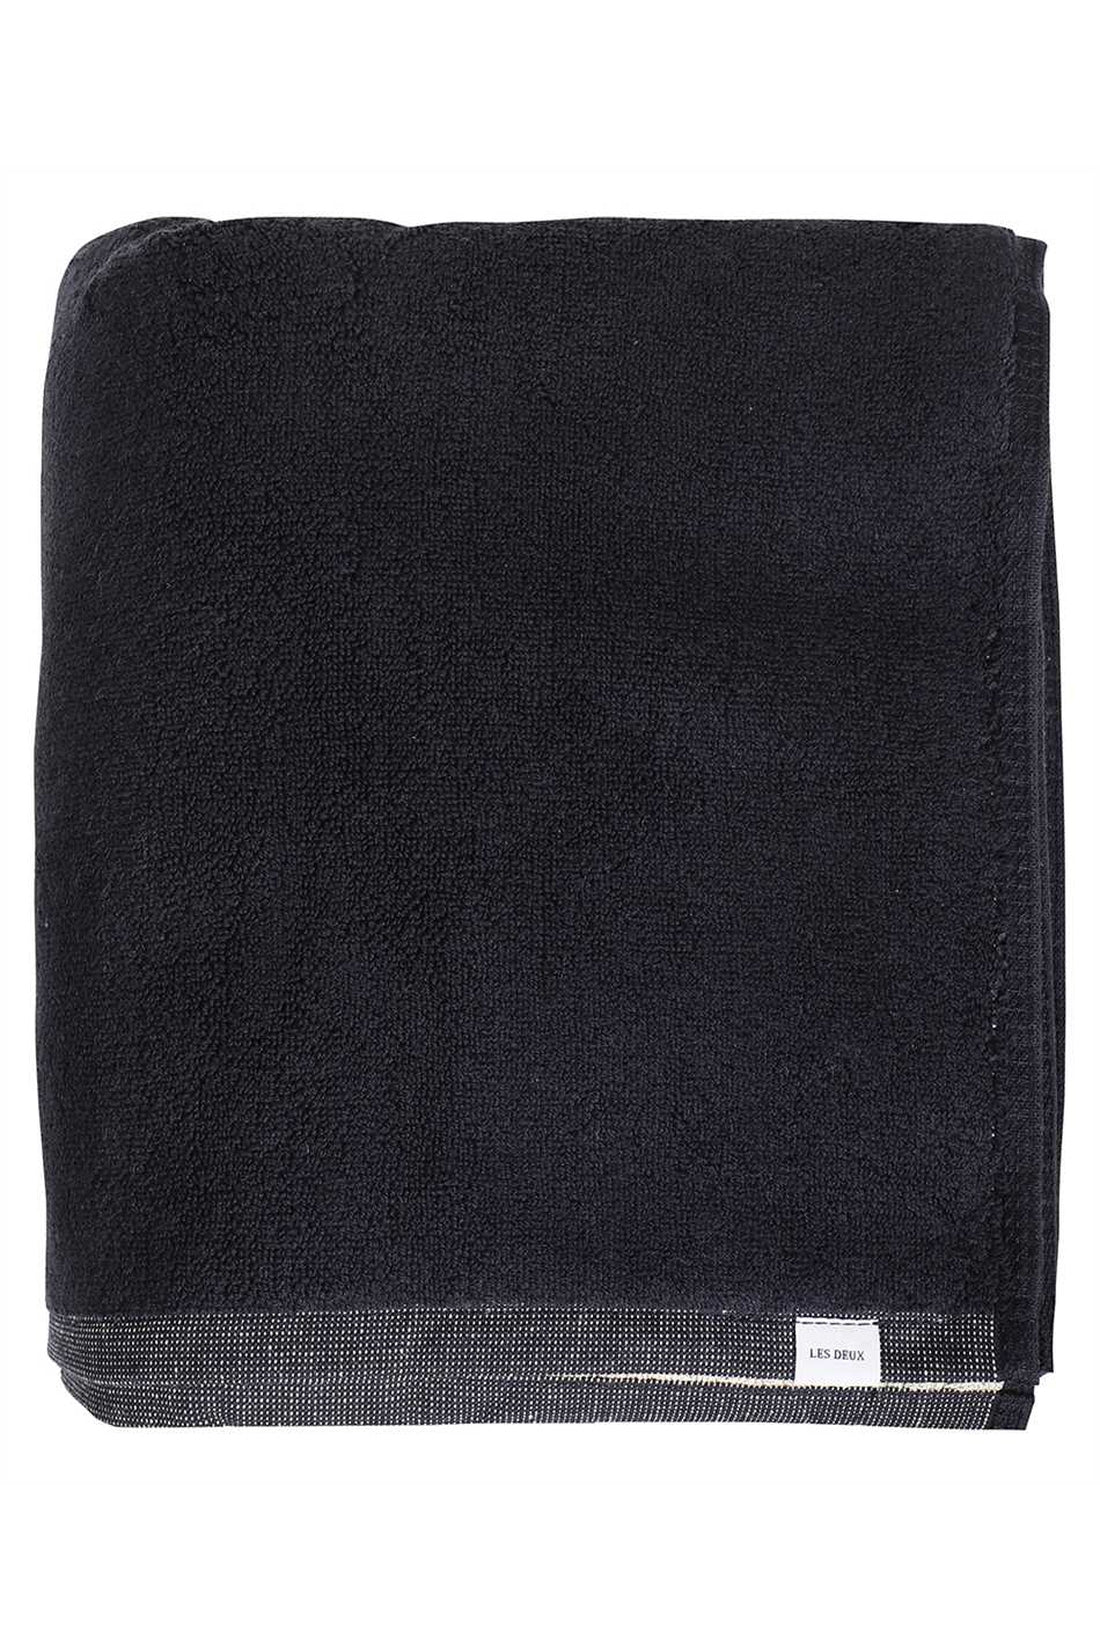 Хлопковое пляжное полотенце Les Deux, черный